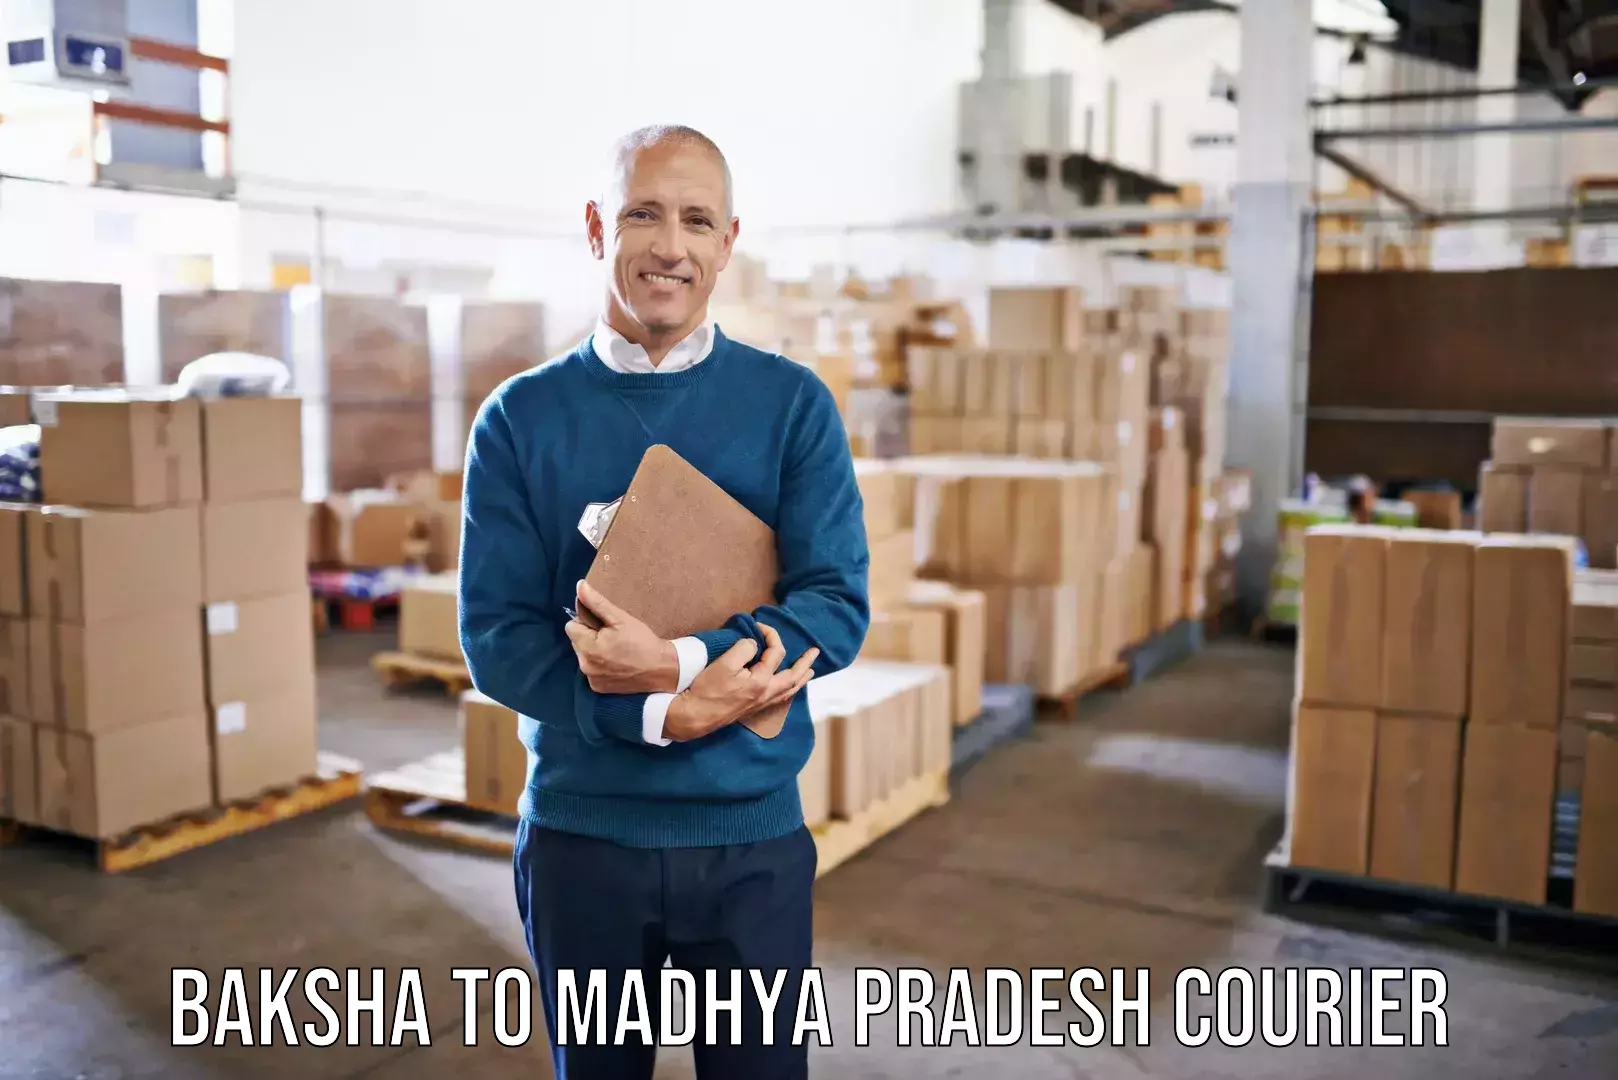 Quality moving and storage Baksha to Madhya Pradesh